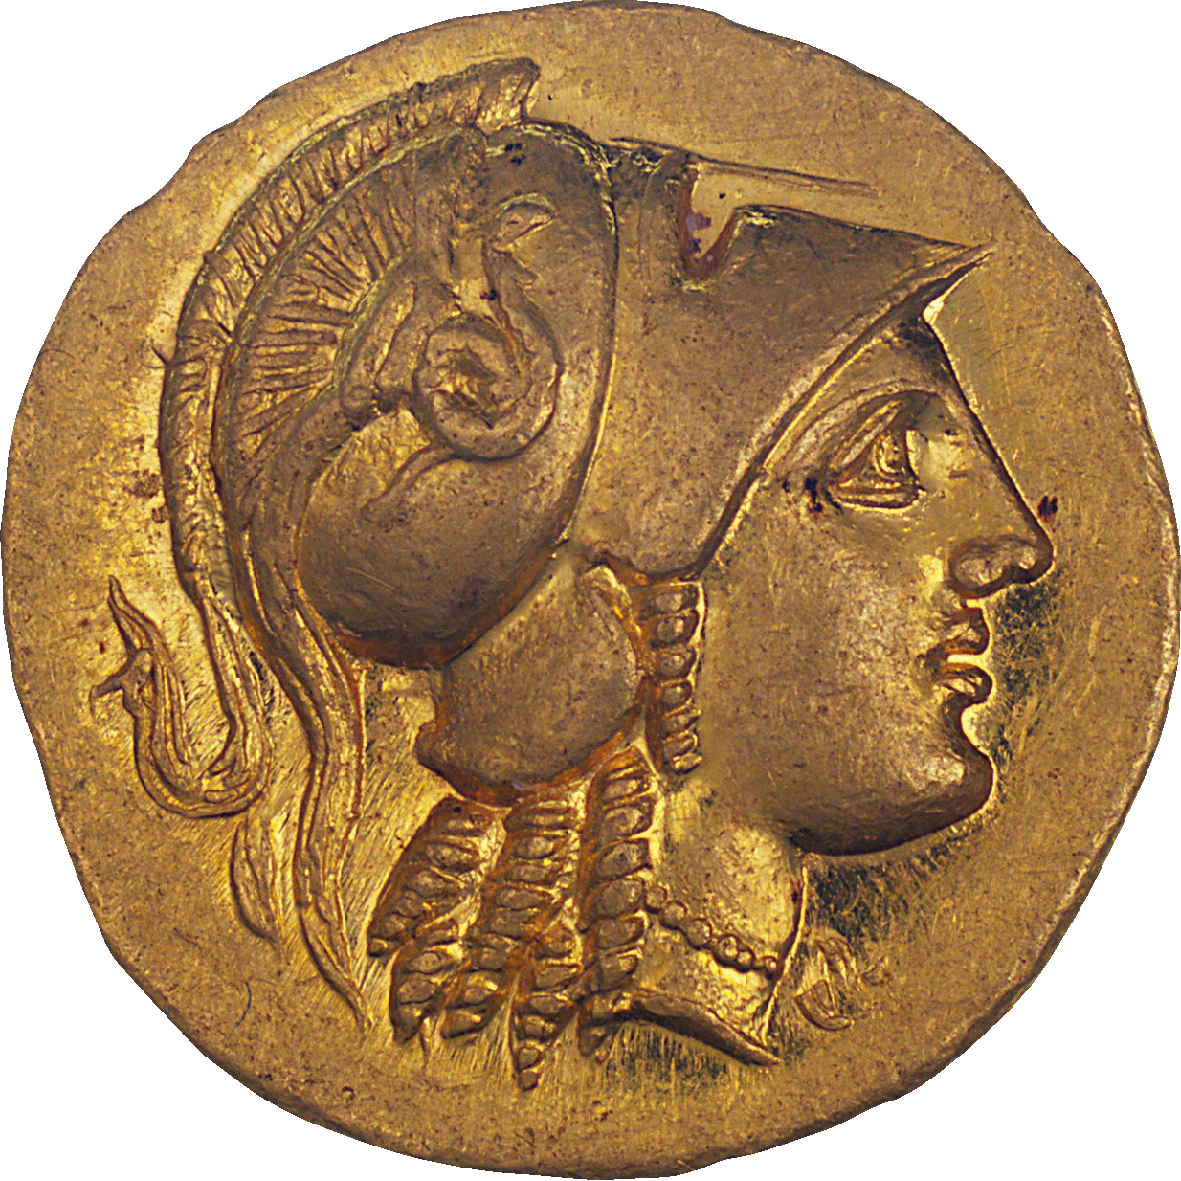 Königreich Makedonien, Alexander III., Stater (obverse)